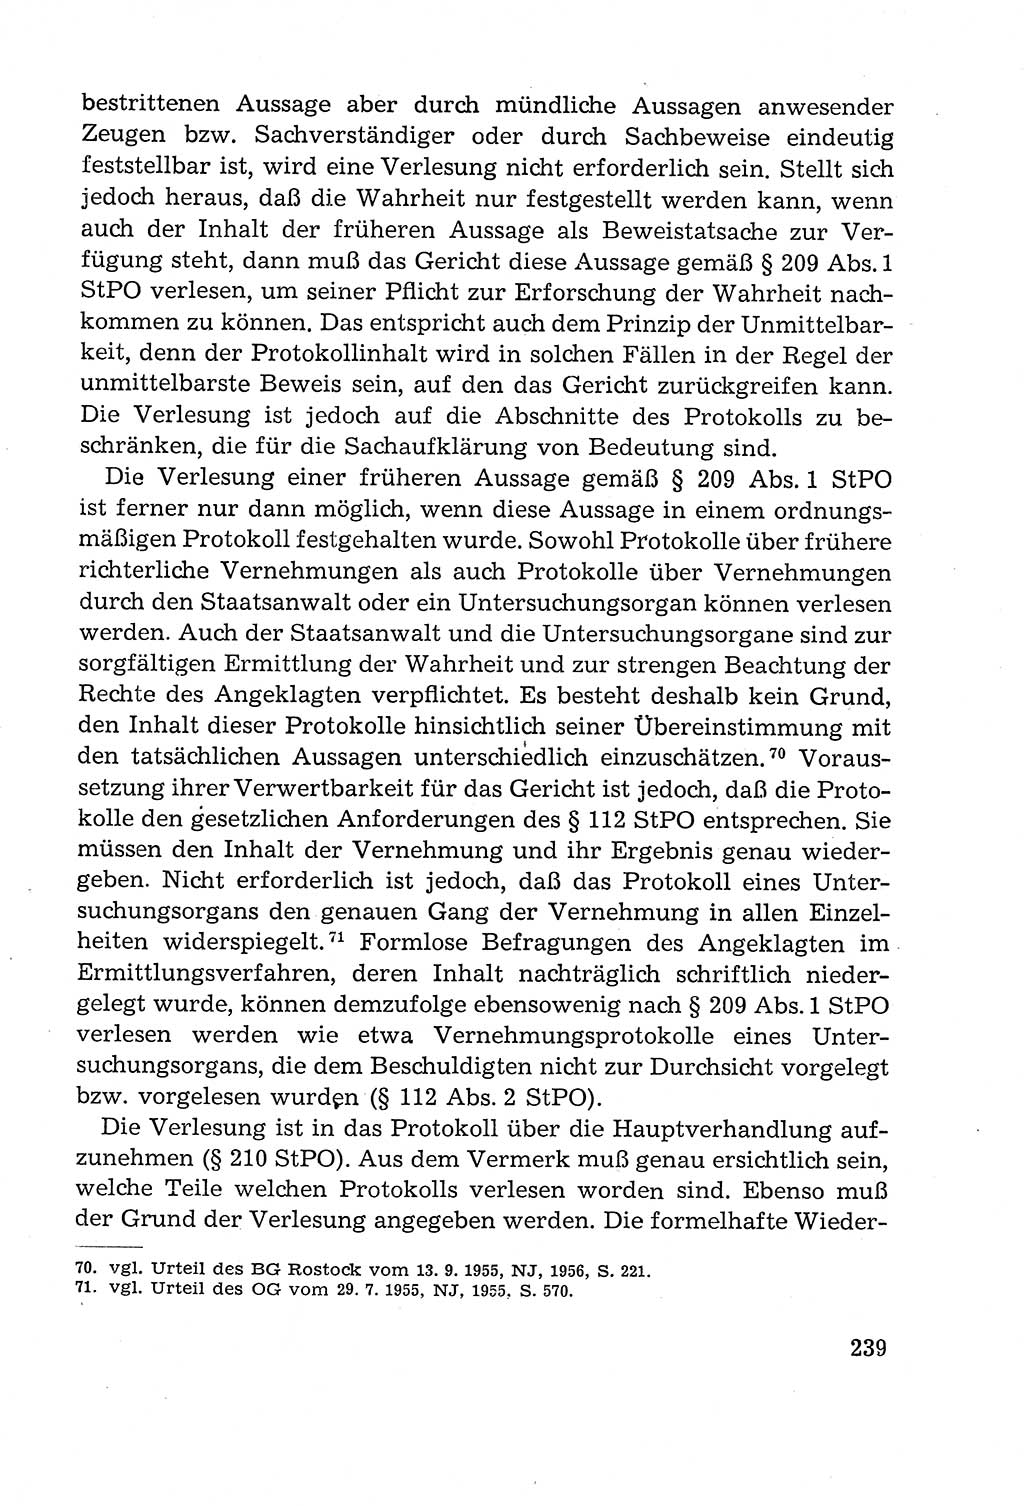 Leitfaden des Strafprozeßrechts der Deutschen Demokratischen Republik (DDR) 1959, Seite 239 (LF StPR DDR 1959, S. 239)